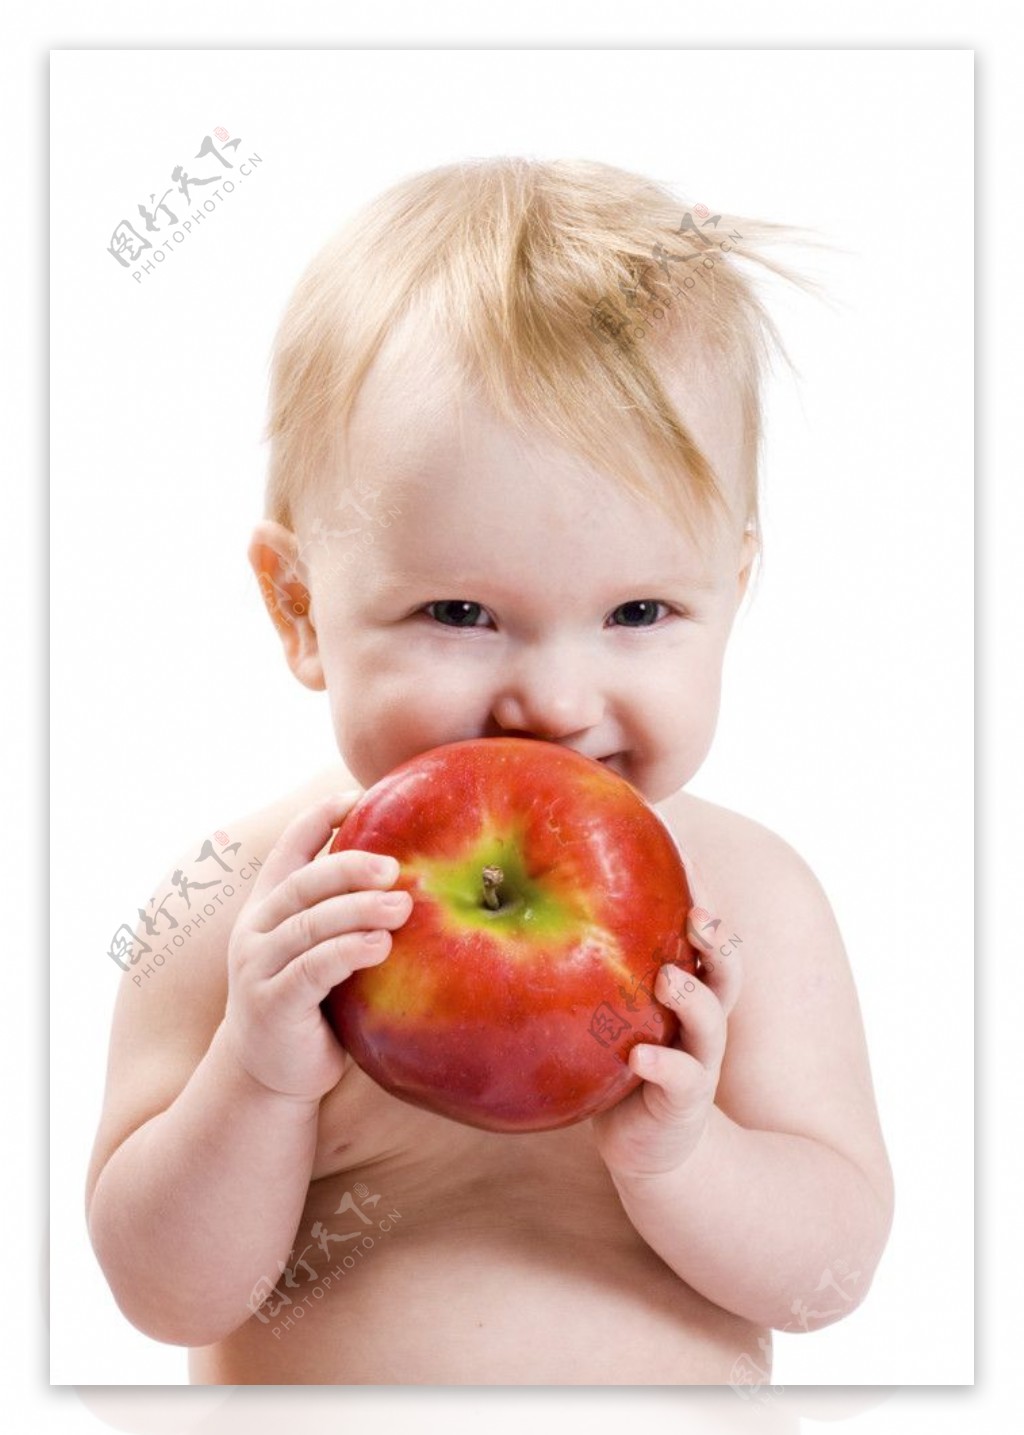 吃苹果的小孩苹果图片